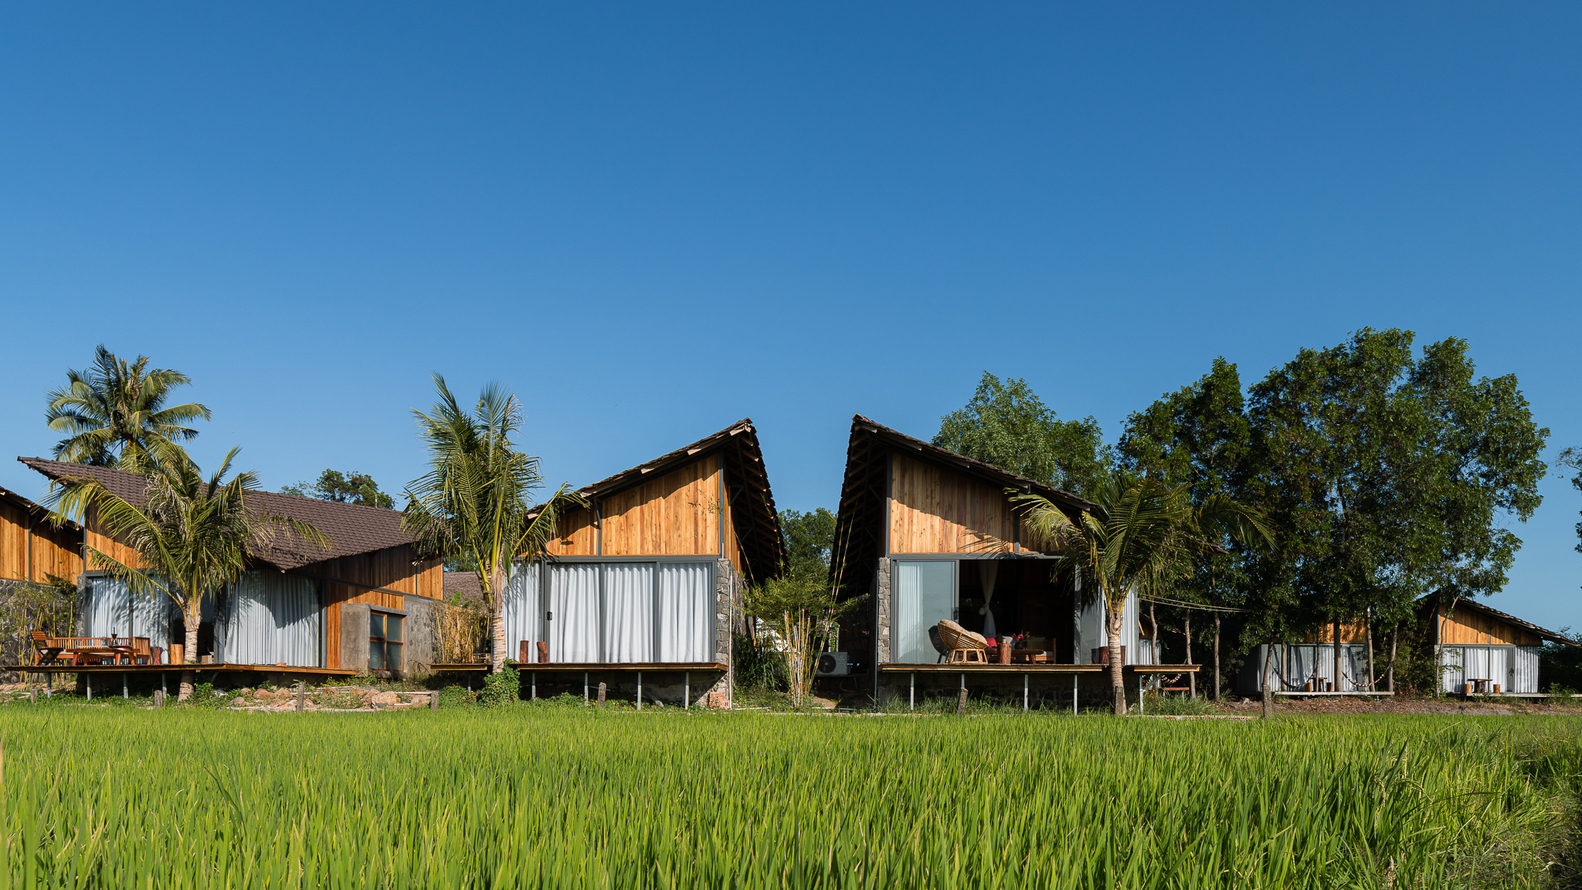 Hình ảnh nhà nghỉ dưỡng nhìn ra đồng lúa xanh ngát với mái dốc ấn tượng, xung quanh nhiều cây lớn 